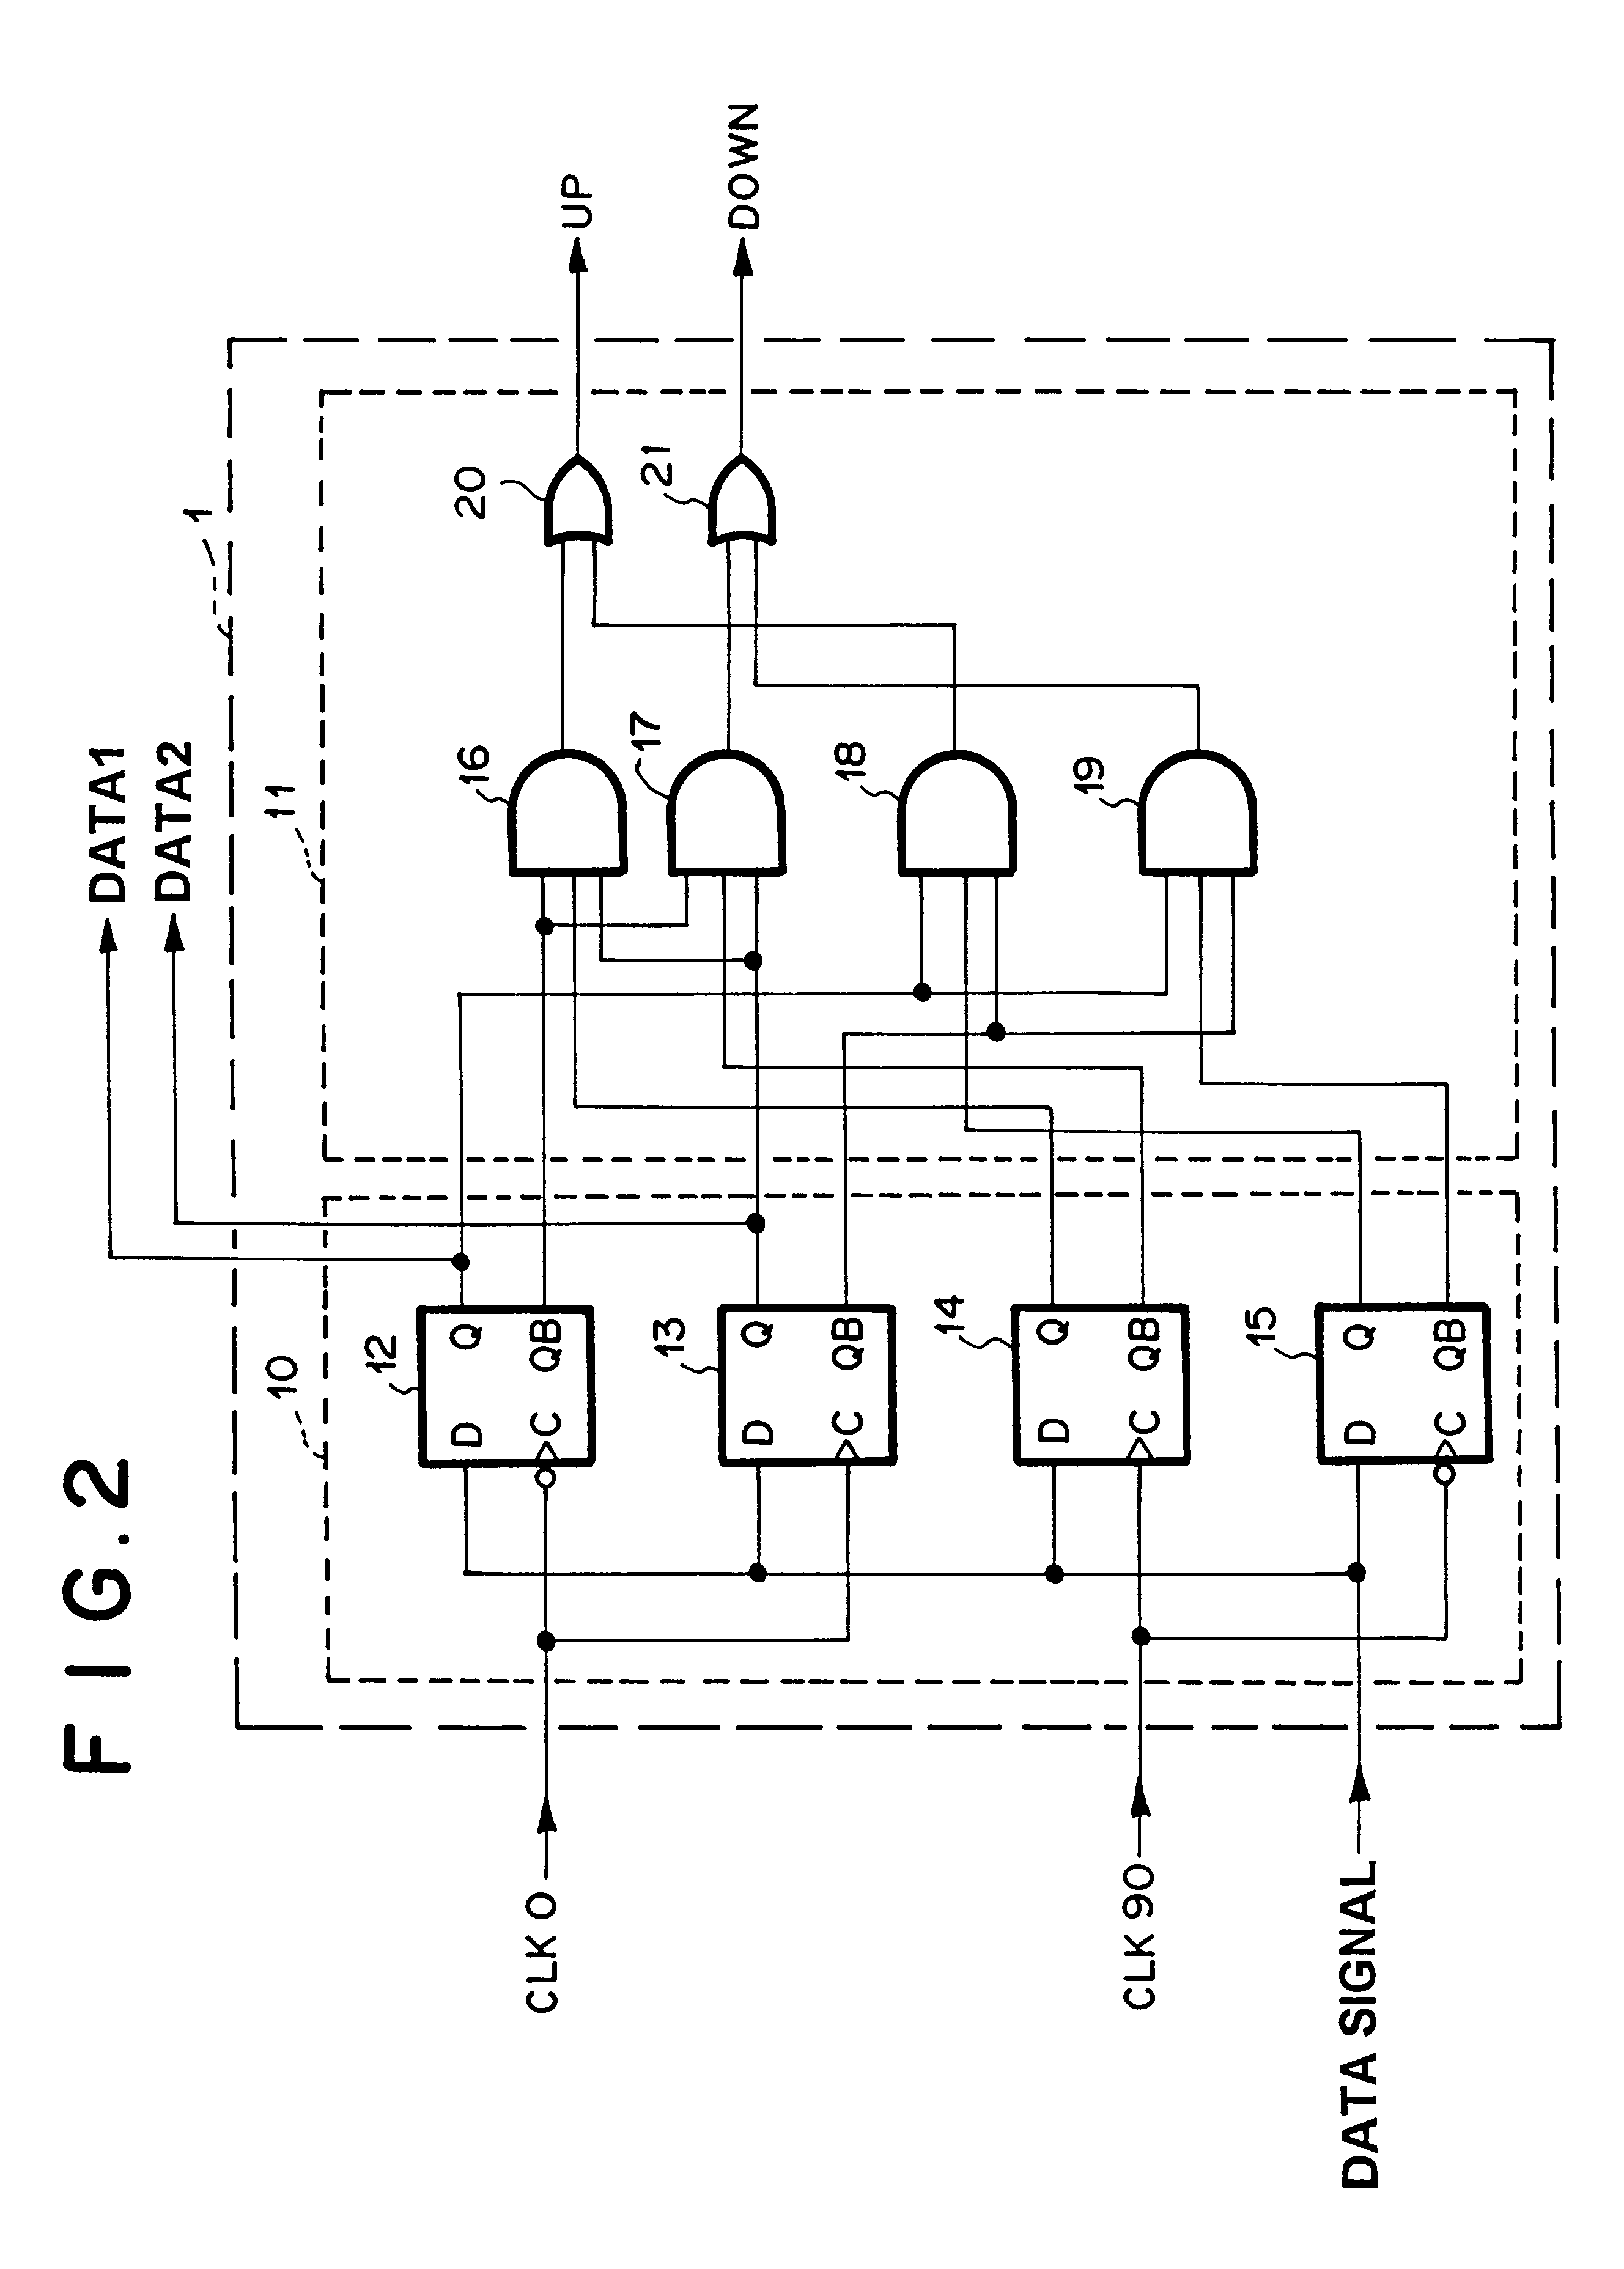 Two phase digital phase locked loop circuit